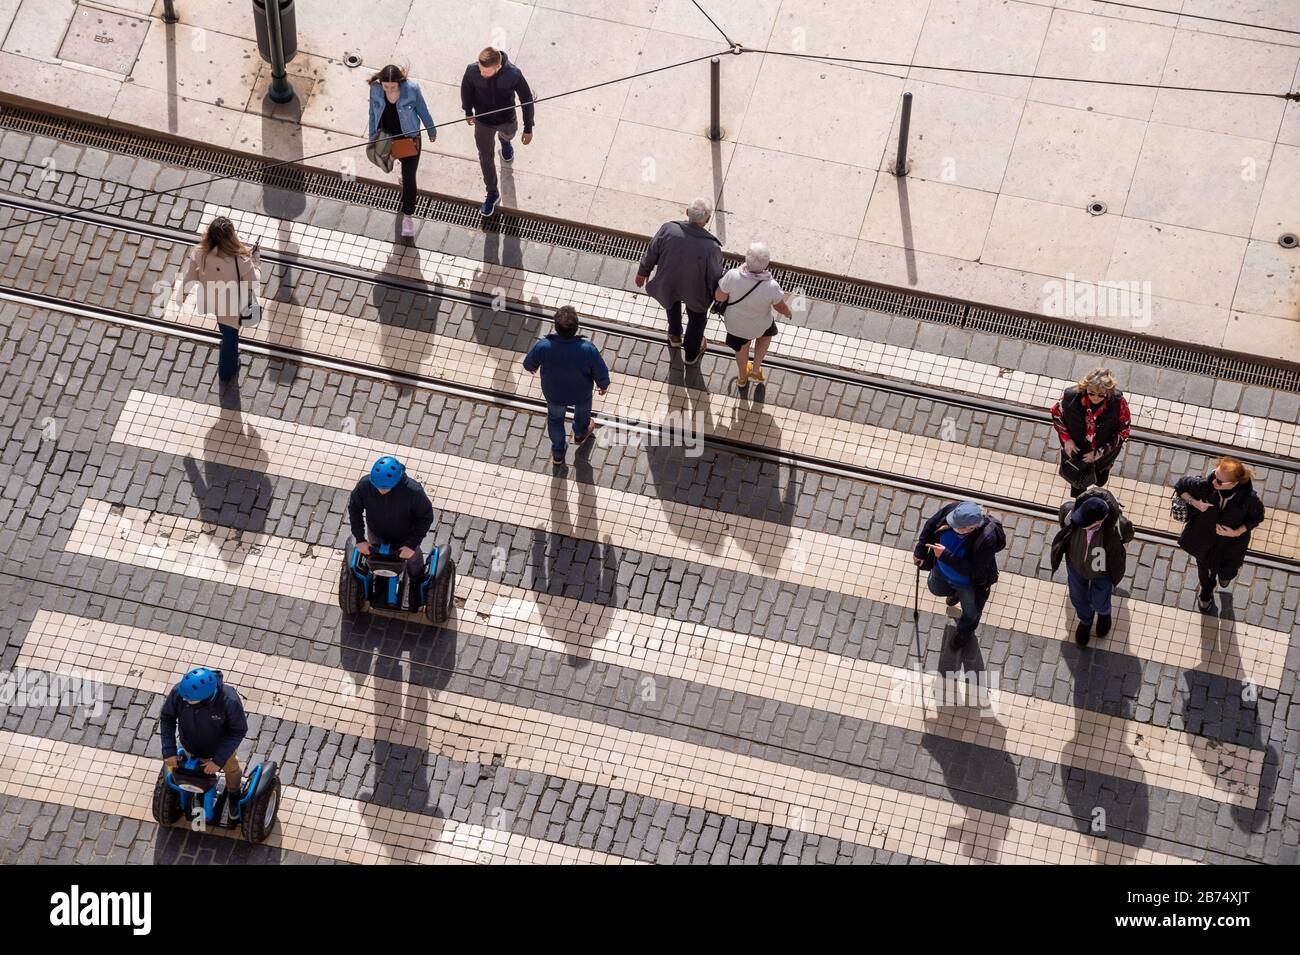 Lisbonne, Portugal - 2 mars 2020: Vue de dessus de nombreuses personnes passant un tableau de concordance Banque D'Images